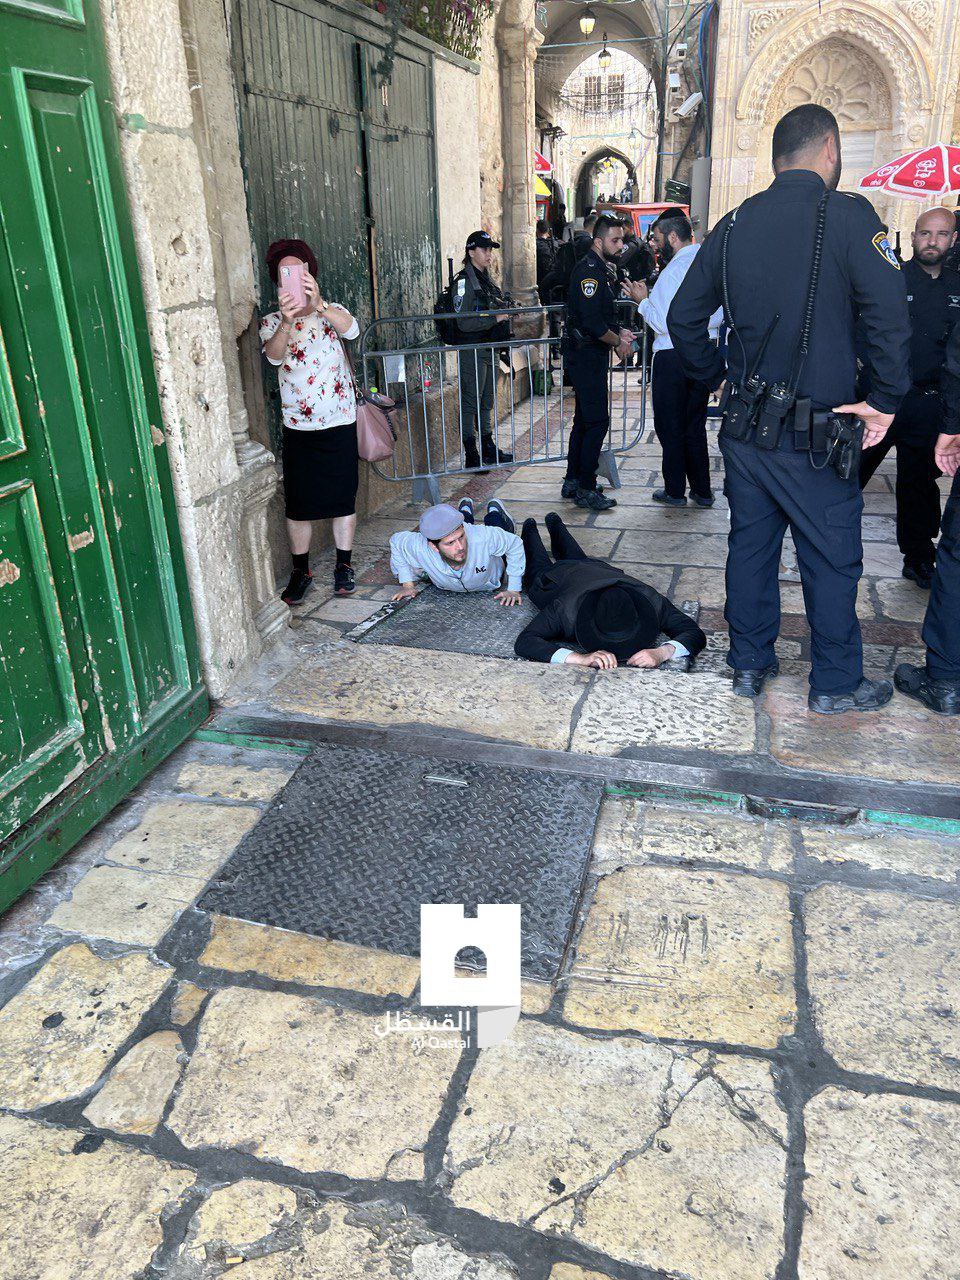 IMMAGINI: 195 coloni coloniali israeliani irrompono nella moschea di Al-Aqsa a Gerusalemme – Quds News Network